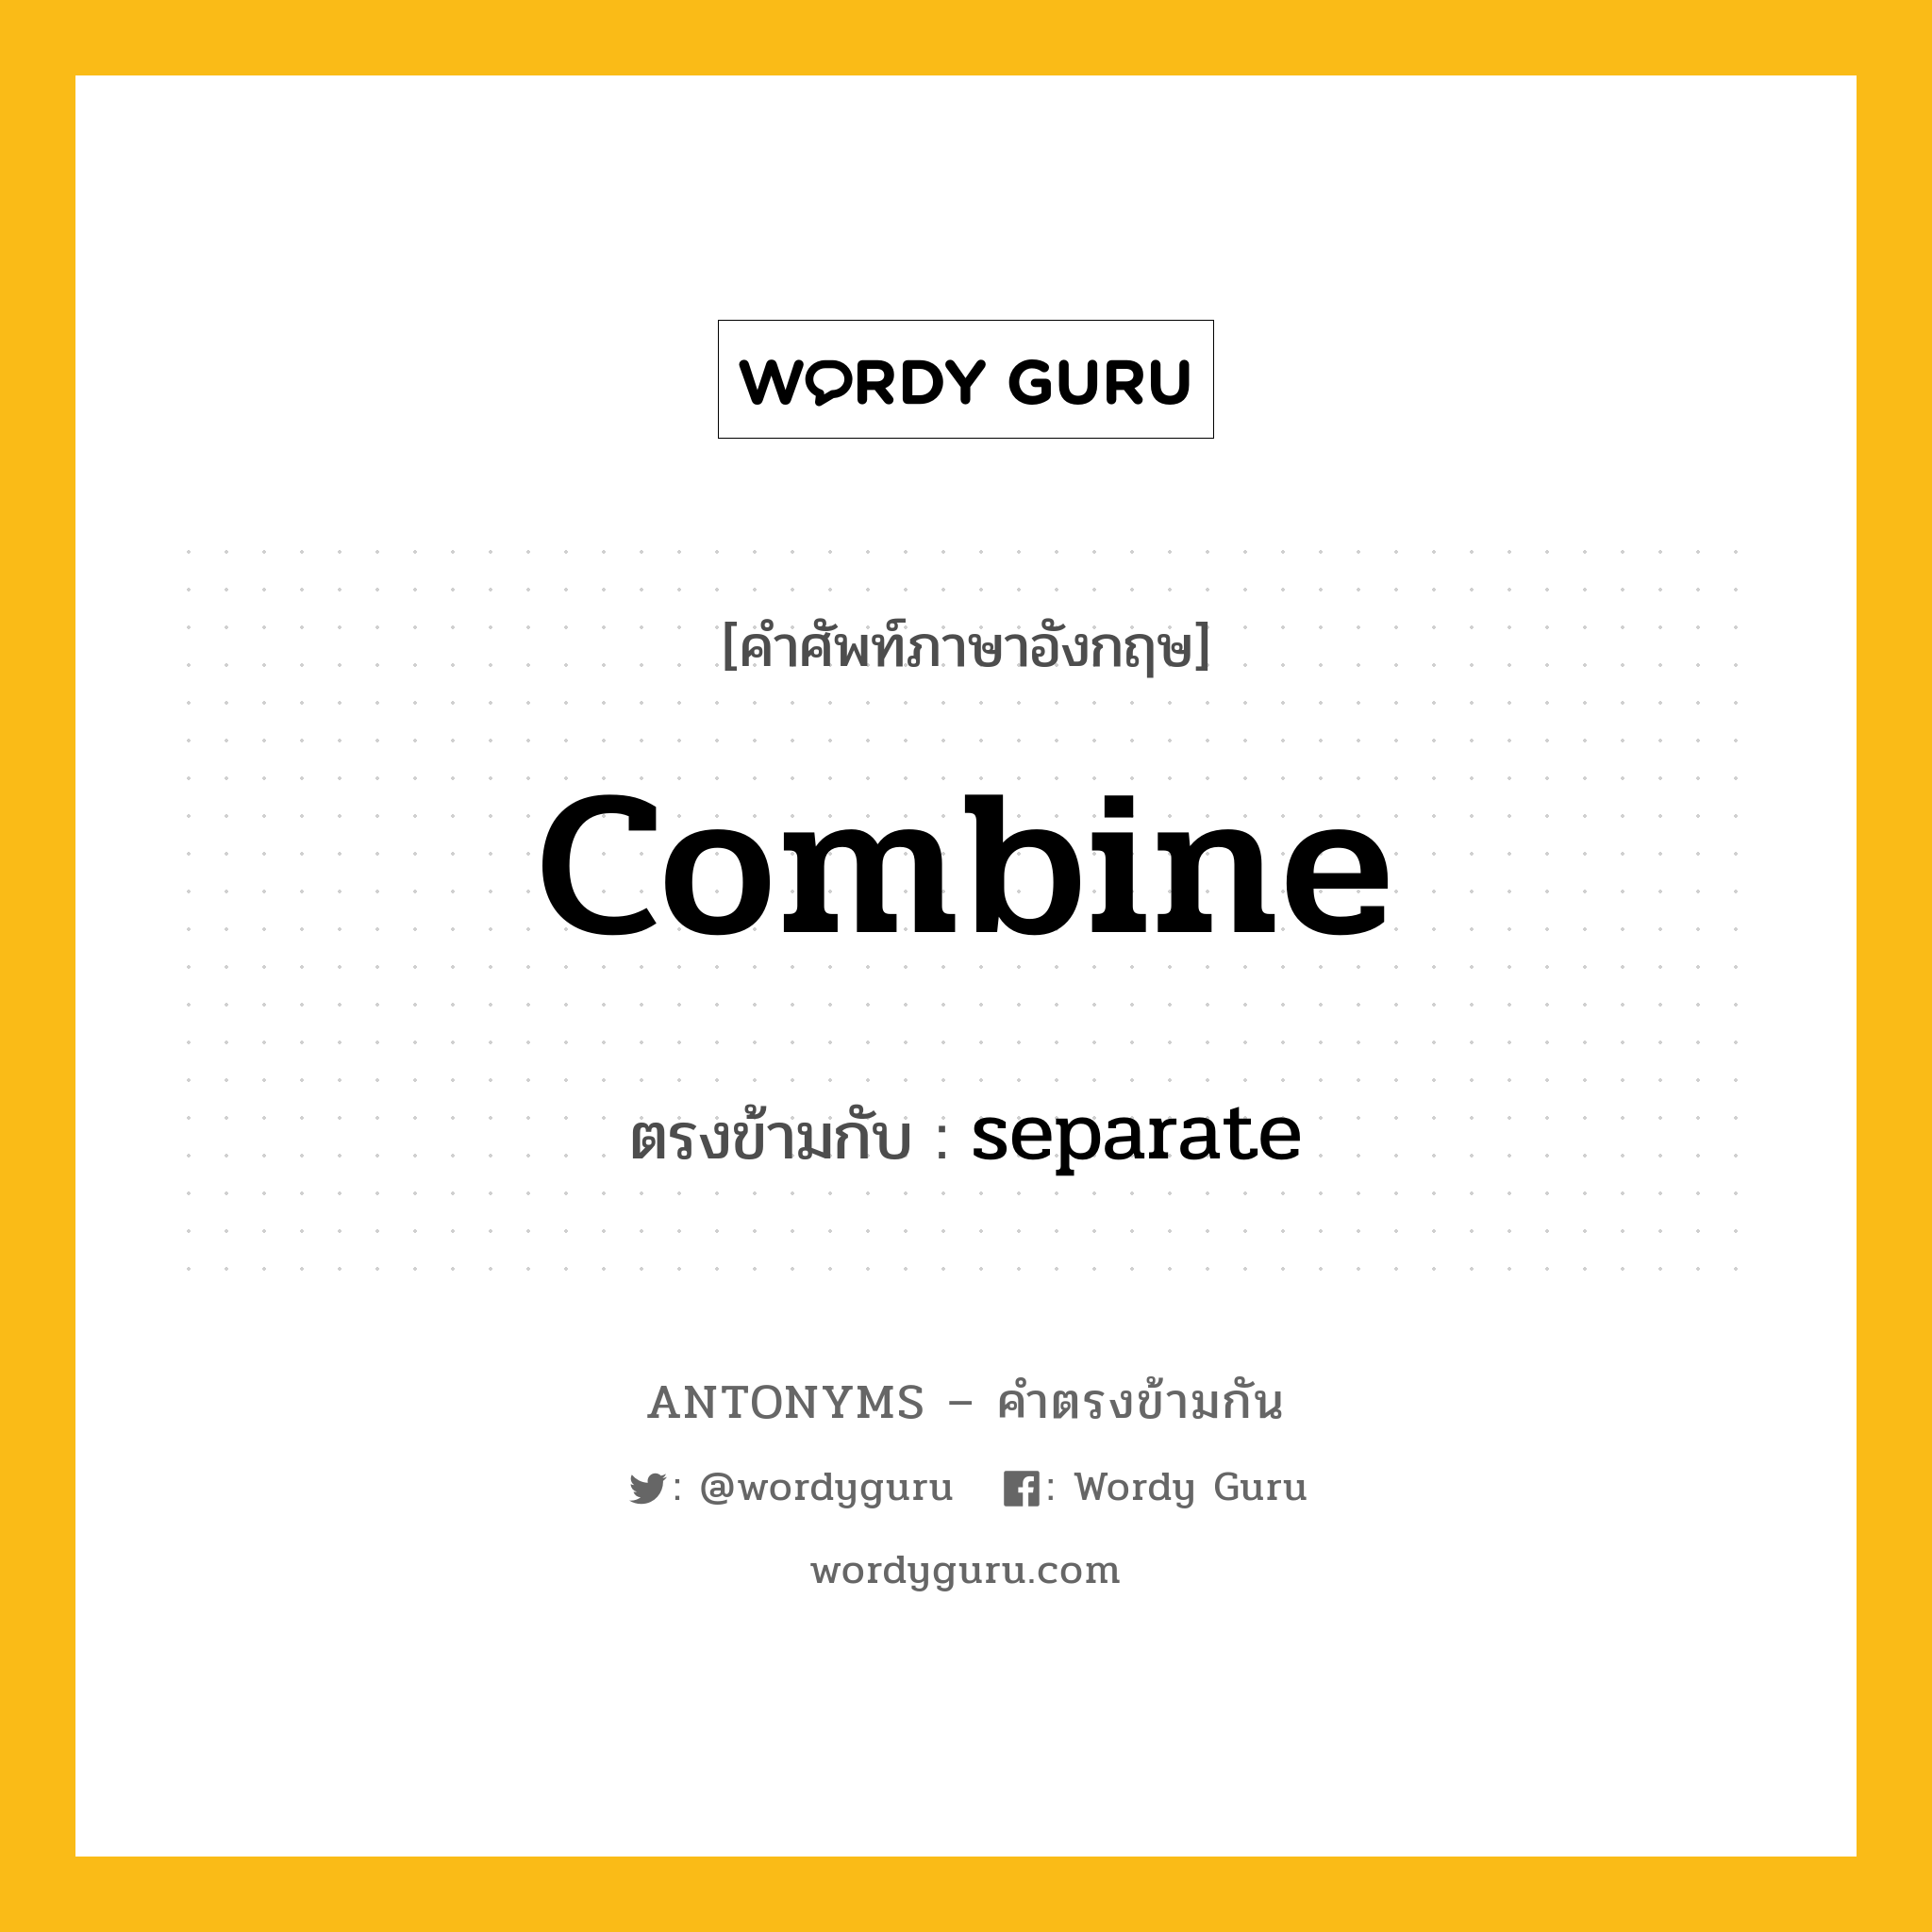 combine เป็นคำตรงข้ามกับคำไหนบ้าง?, คำศัพท์ภาษาอังกฤษ combine ตรงข้ามกับ separate หมวด separate